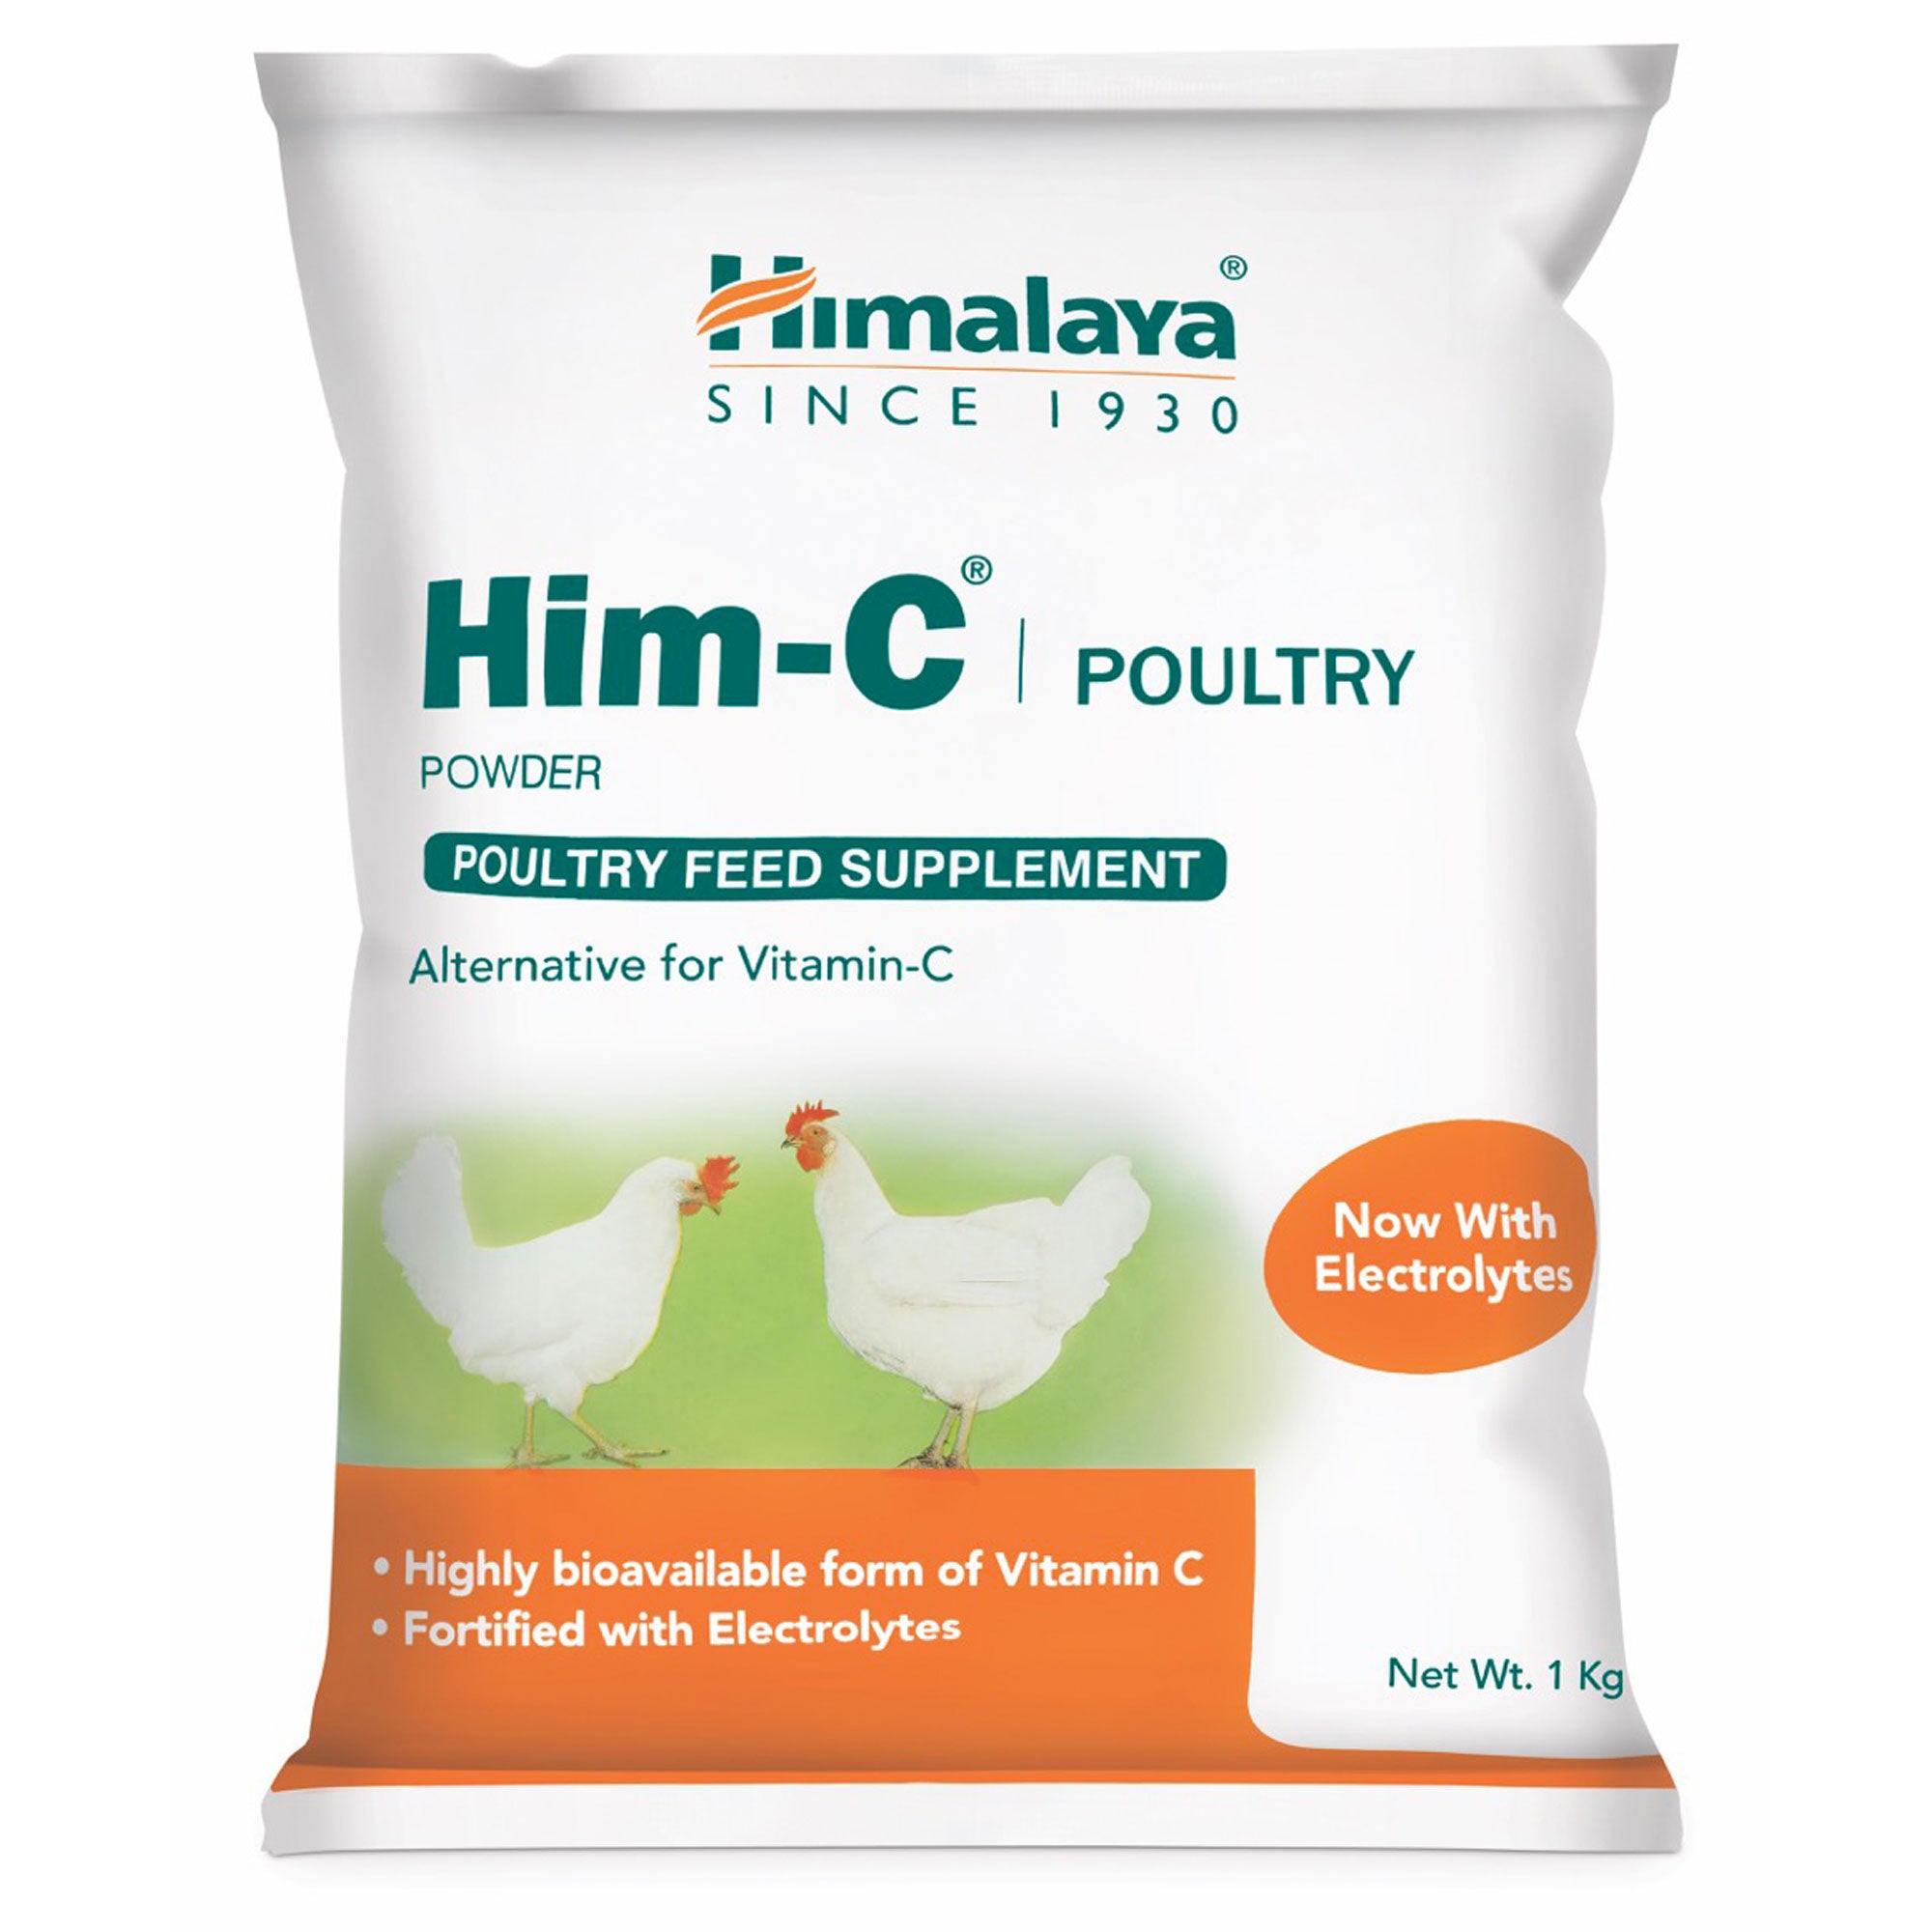 Himalaya HIM-C